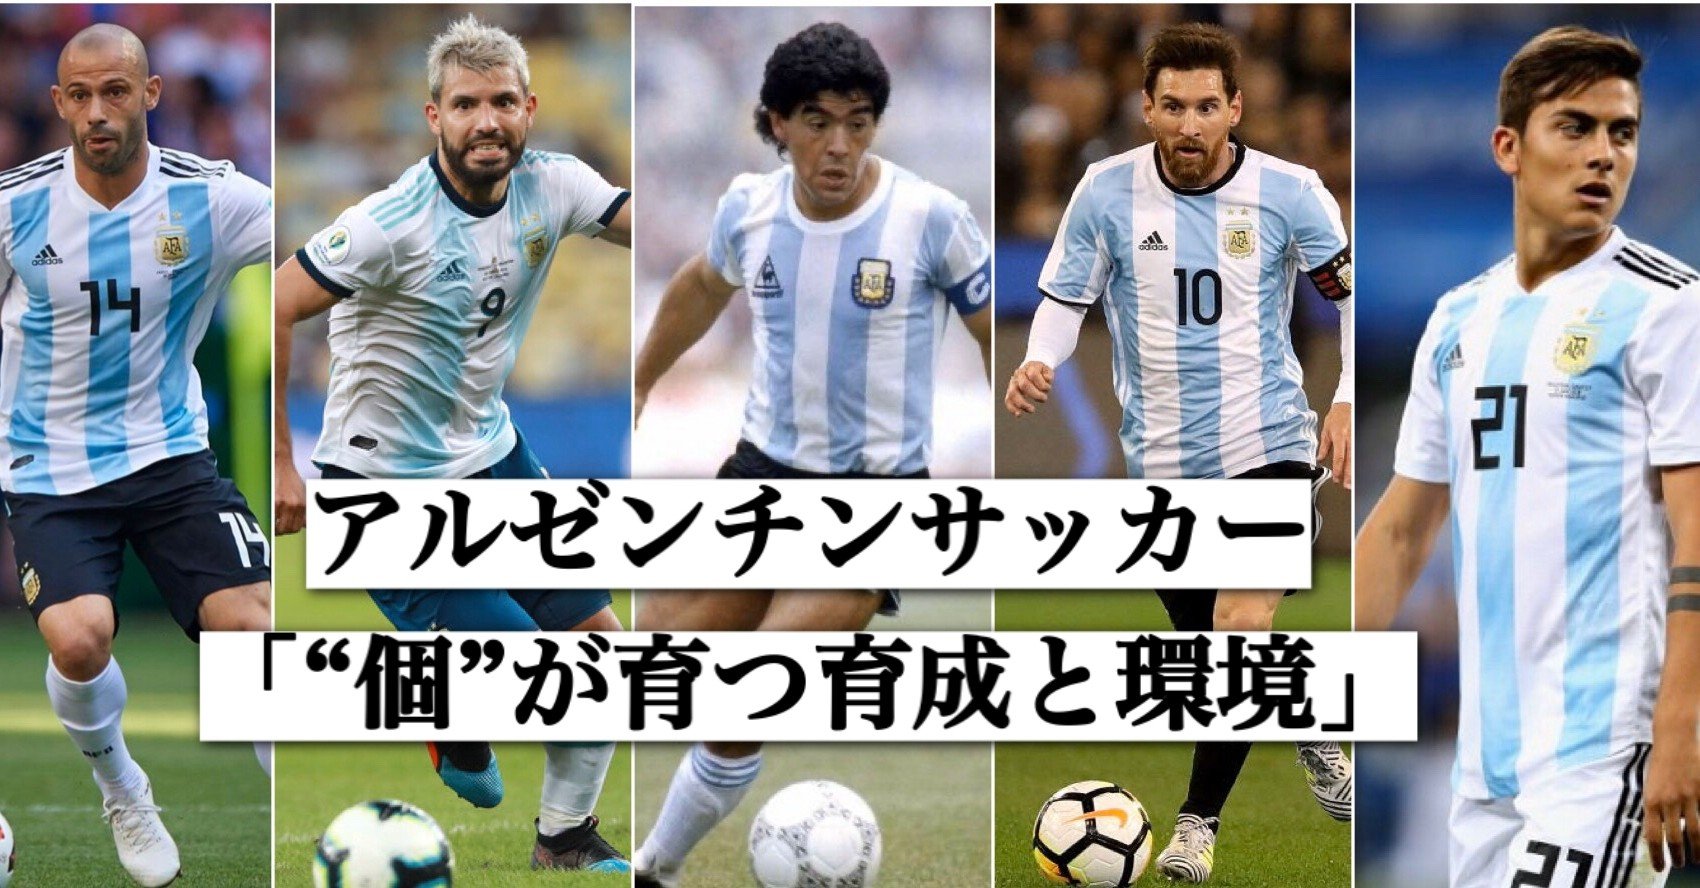 アルゼンチンサッカーの育成 個を育てる 伊達 和輝 Kazuki Date Note